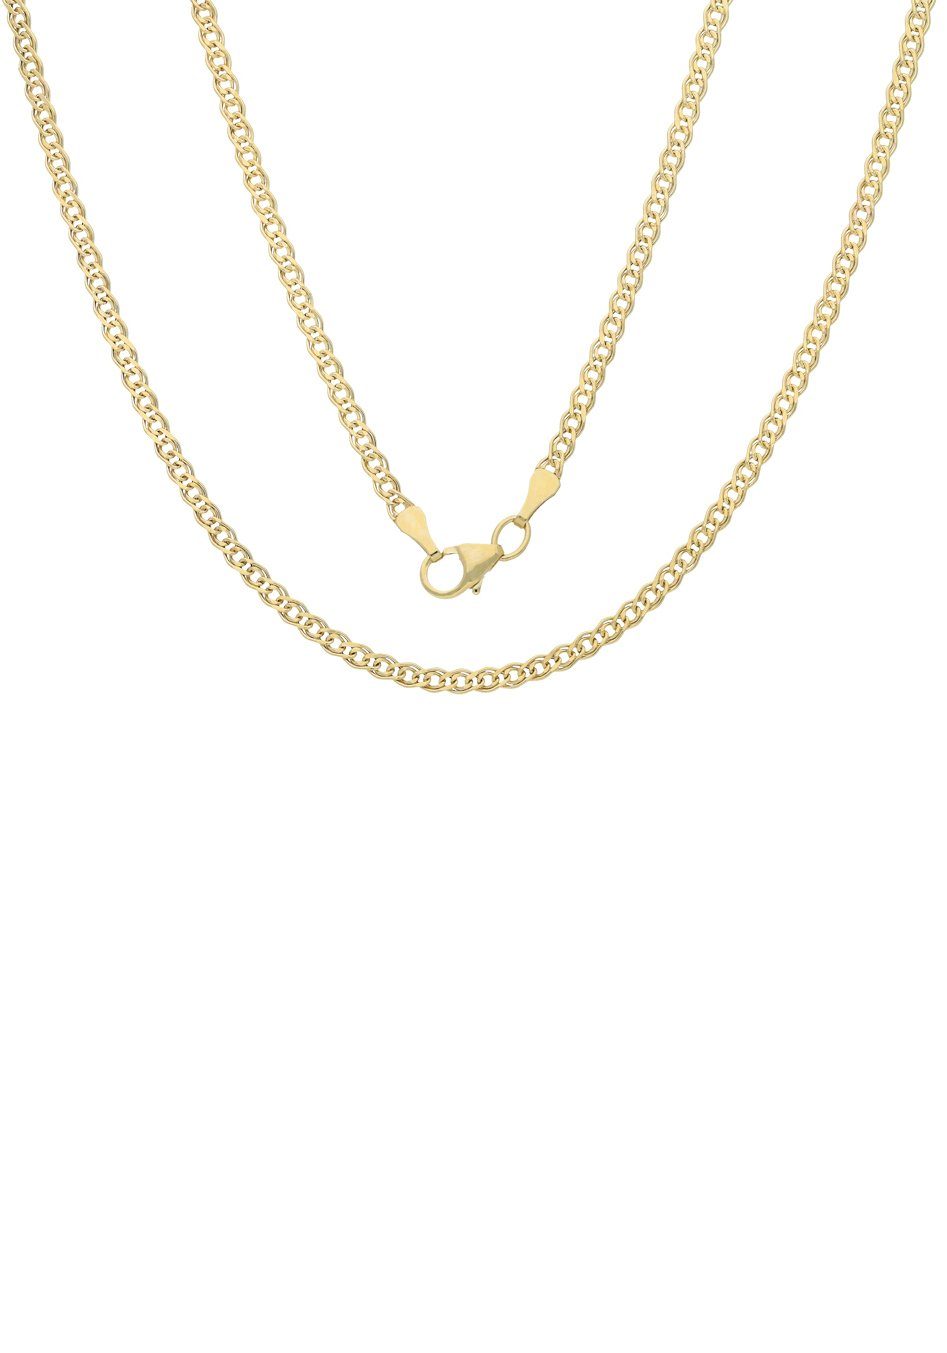 Firetti Goldkette Schmuck Geschenk Gold 375 Halsschmuck Halskette Goldkette Tigerauge, zu Kleid, Shirt, Jeans, Sneaker! Anlass Geburtstag Weihnachten